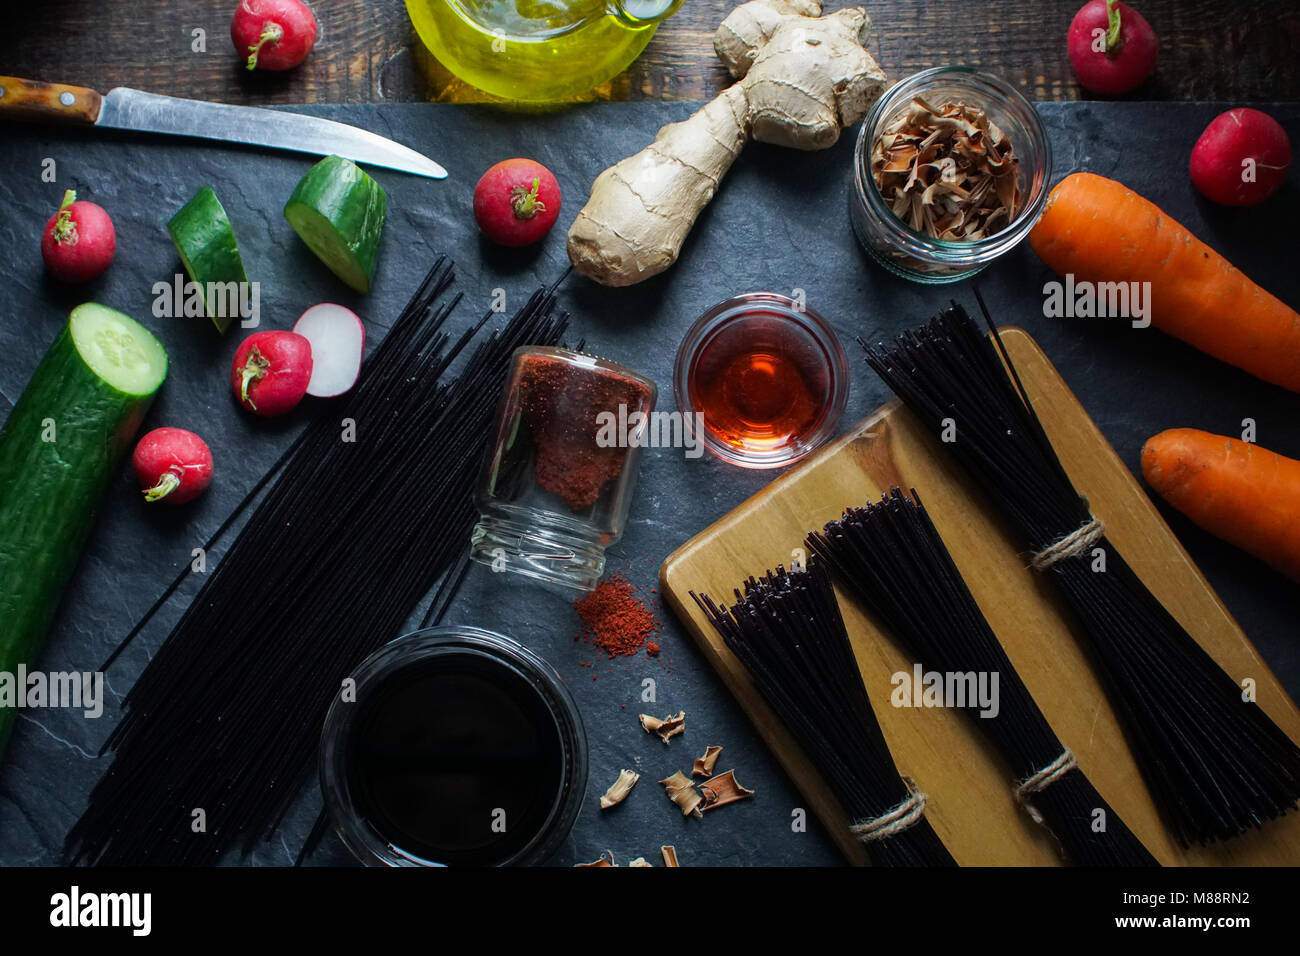 Vermicelles de riz noir, du vinaigre et des légumes sur une ardoise noire Vue de dessus. Horizontale de la cuisine asiatique Banque D'Images